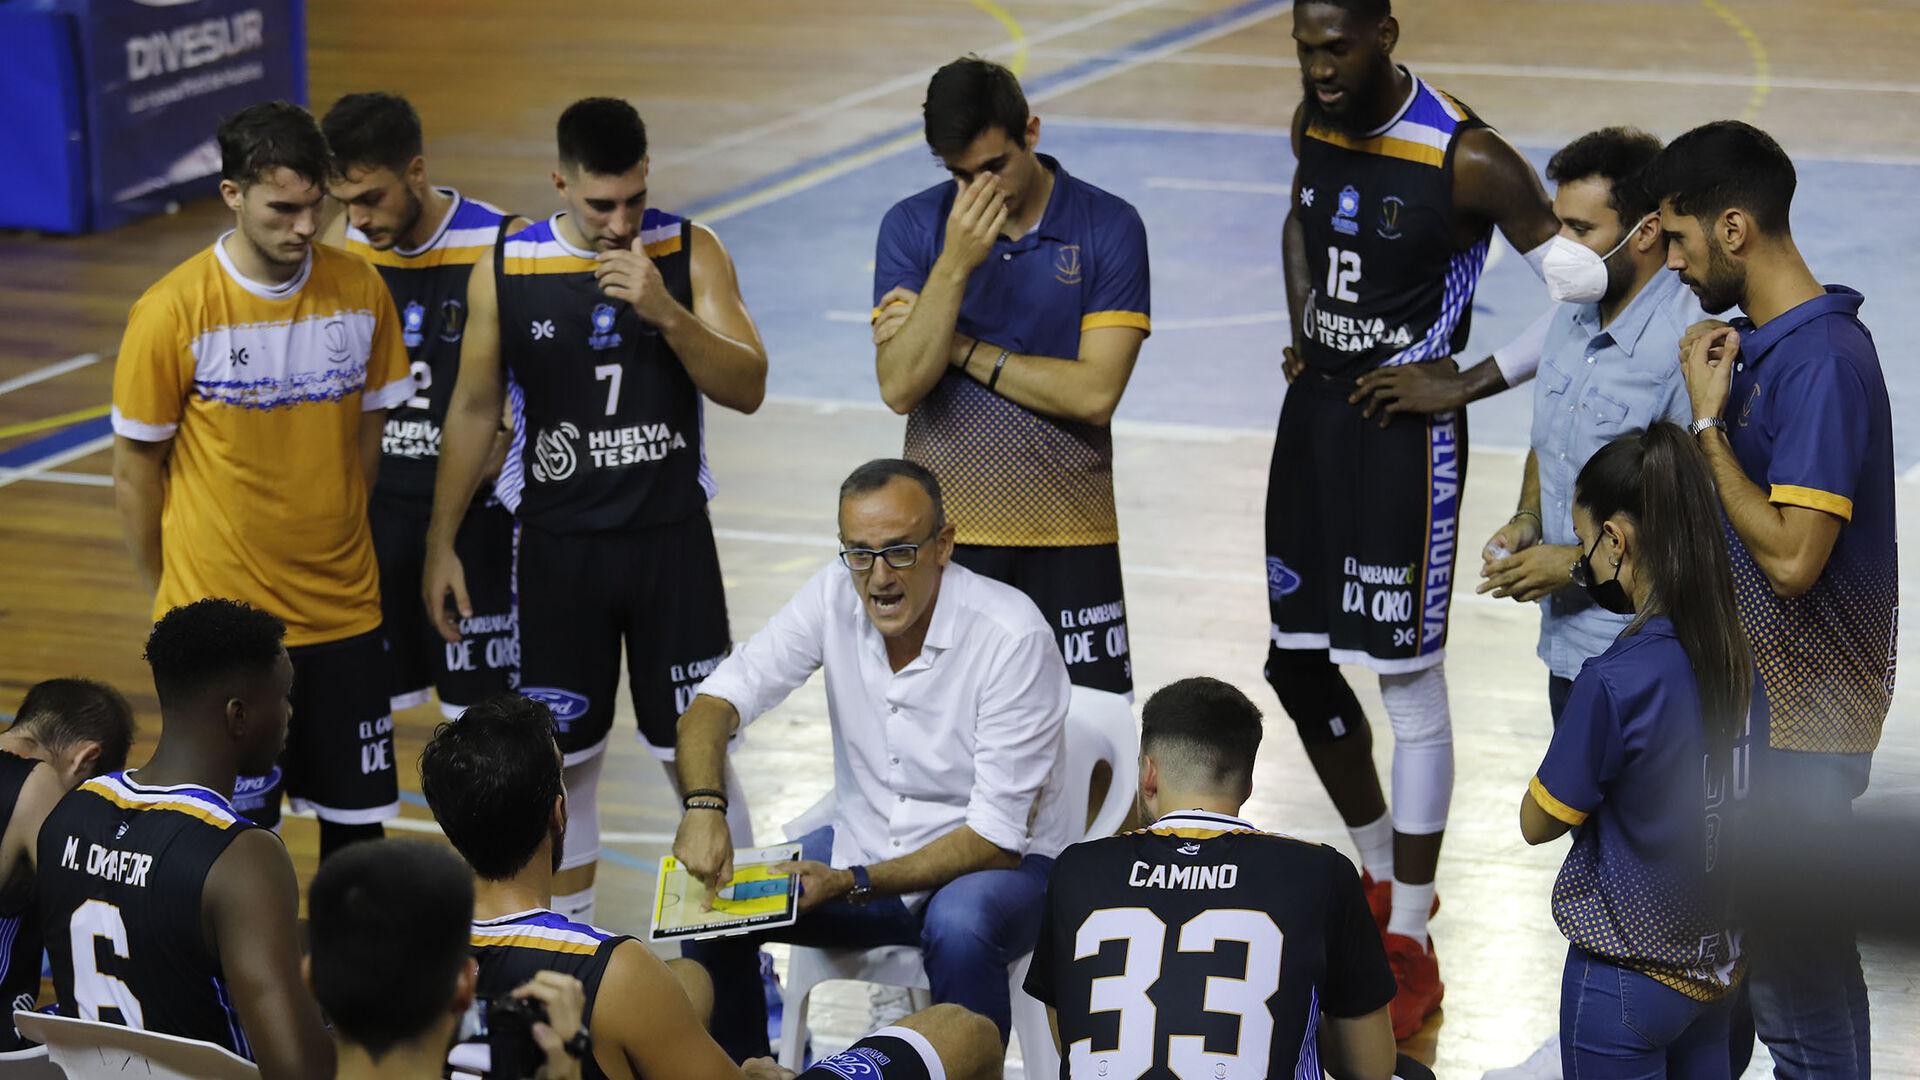 im&aacute;genes del encuentro de baloncesto entre el Huelva Comercio y el Badajoz